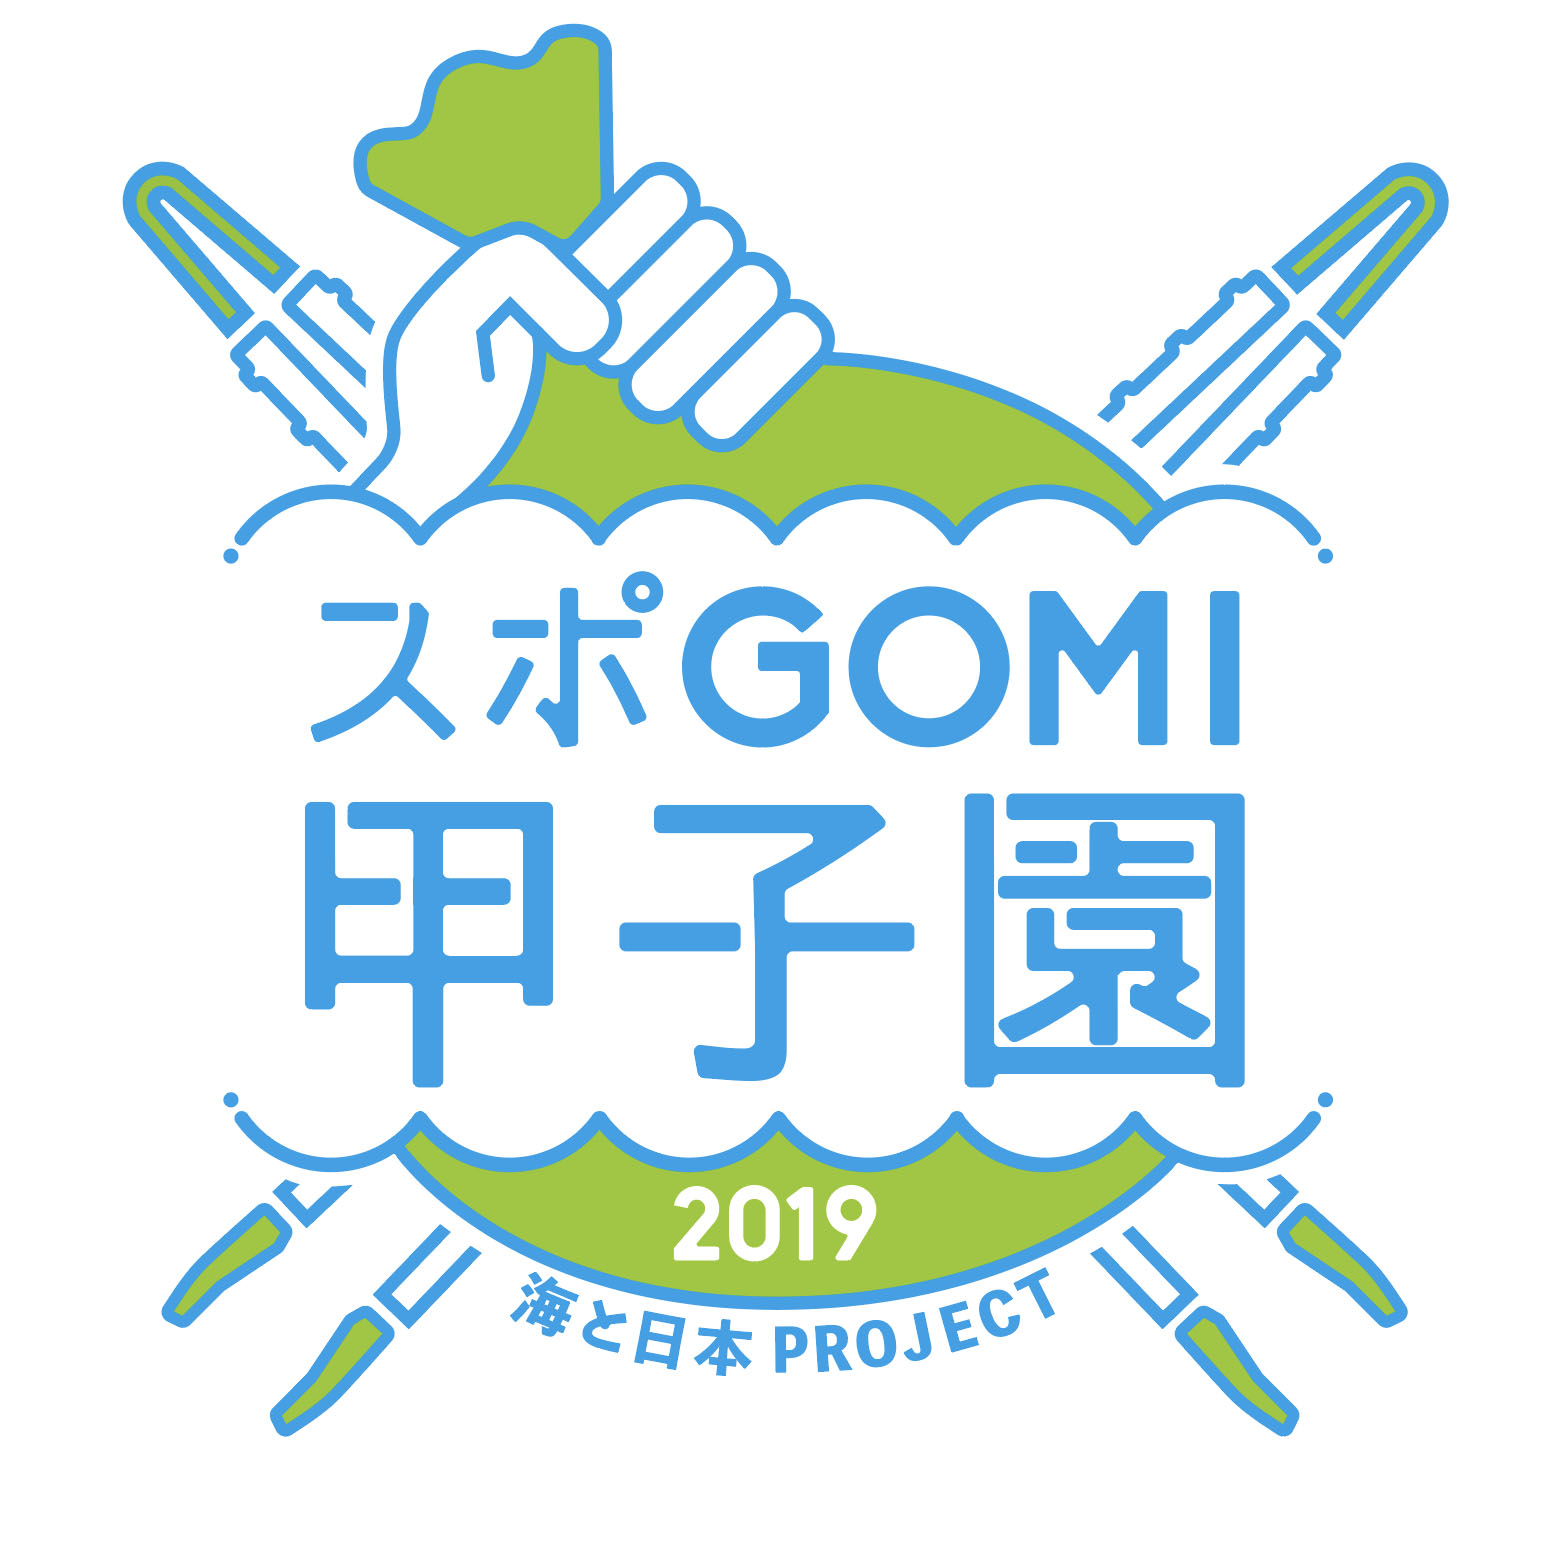 高校生ごみ拾い日本一を目指せ 海と日本プロジェクト スポgomi甲子園 全国大会を開催 株式会社ブレインのプレスリリース